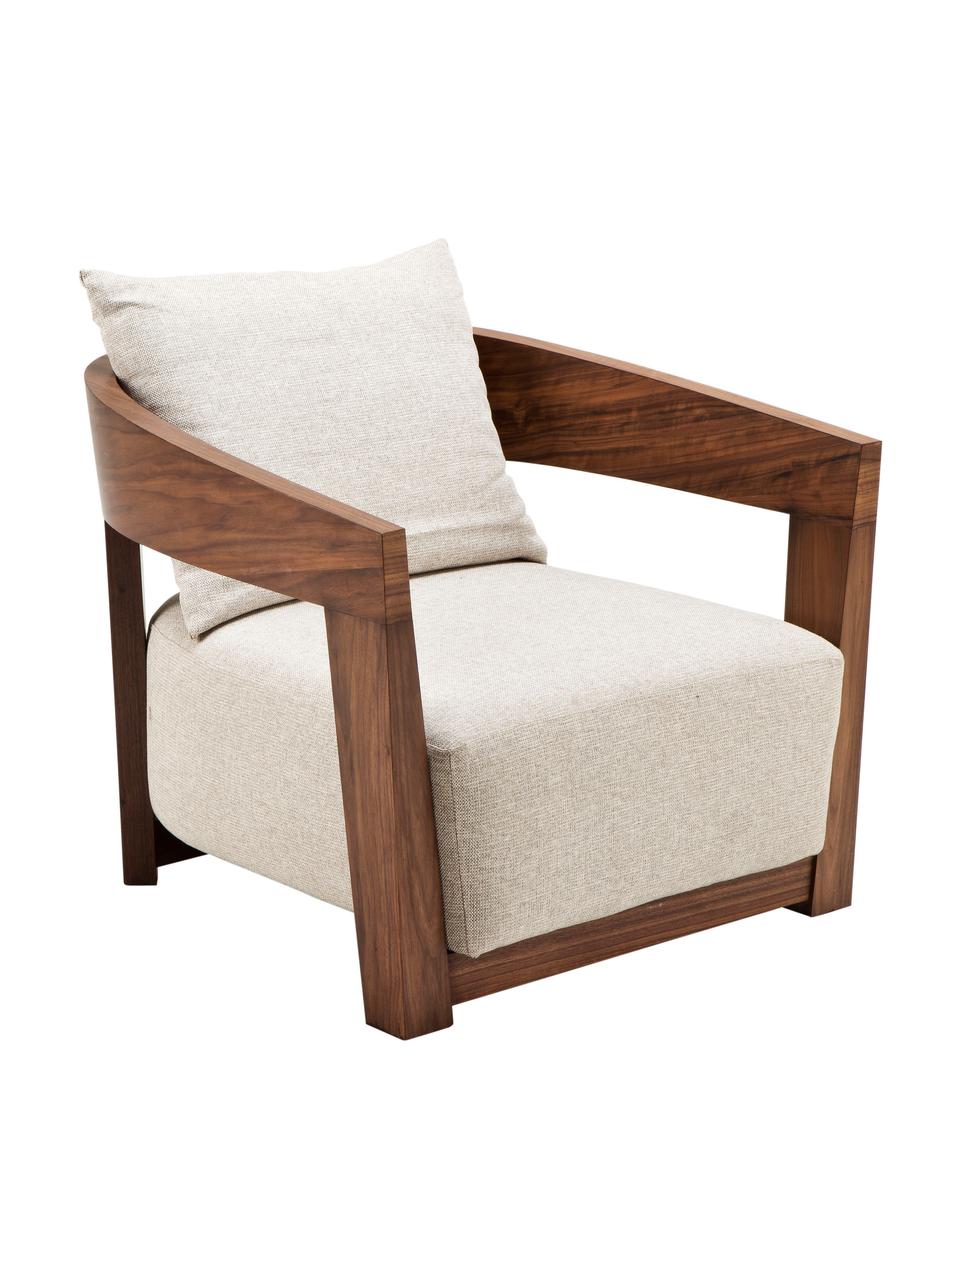 Fotel z drewna Rubautelli, Tapicerka: 58% poliester, 42% olefin, Beżowy, S 74 x G 80 cm